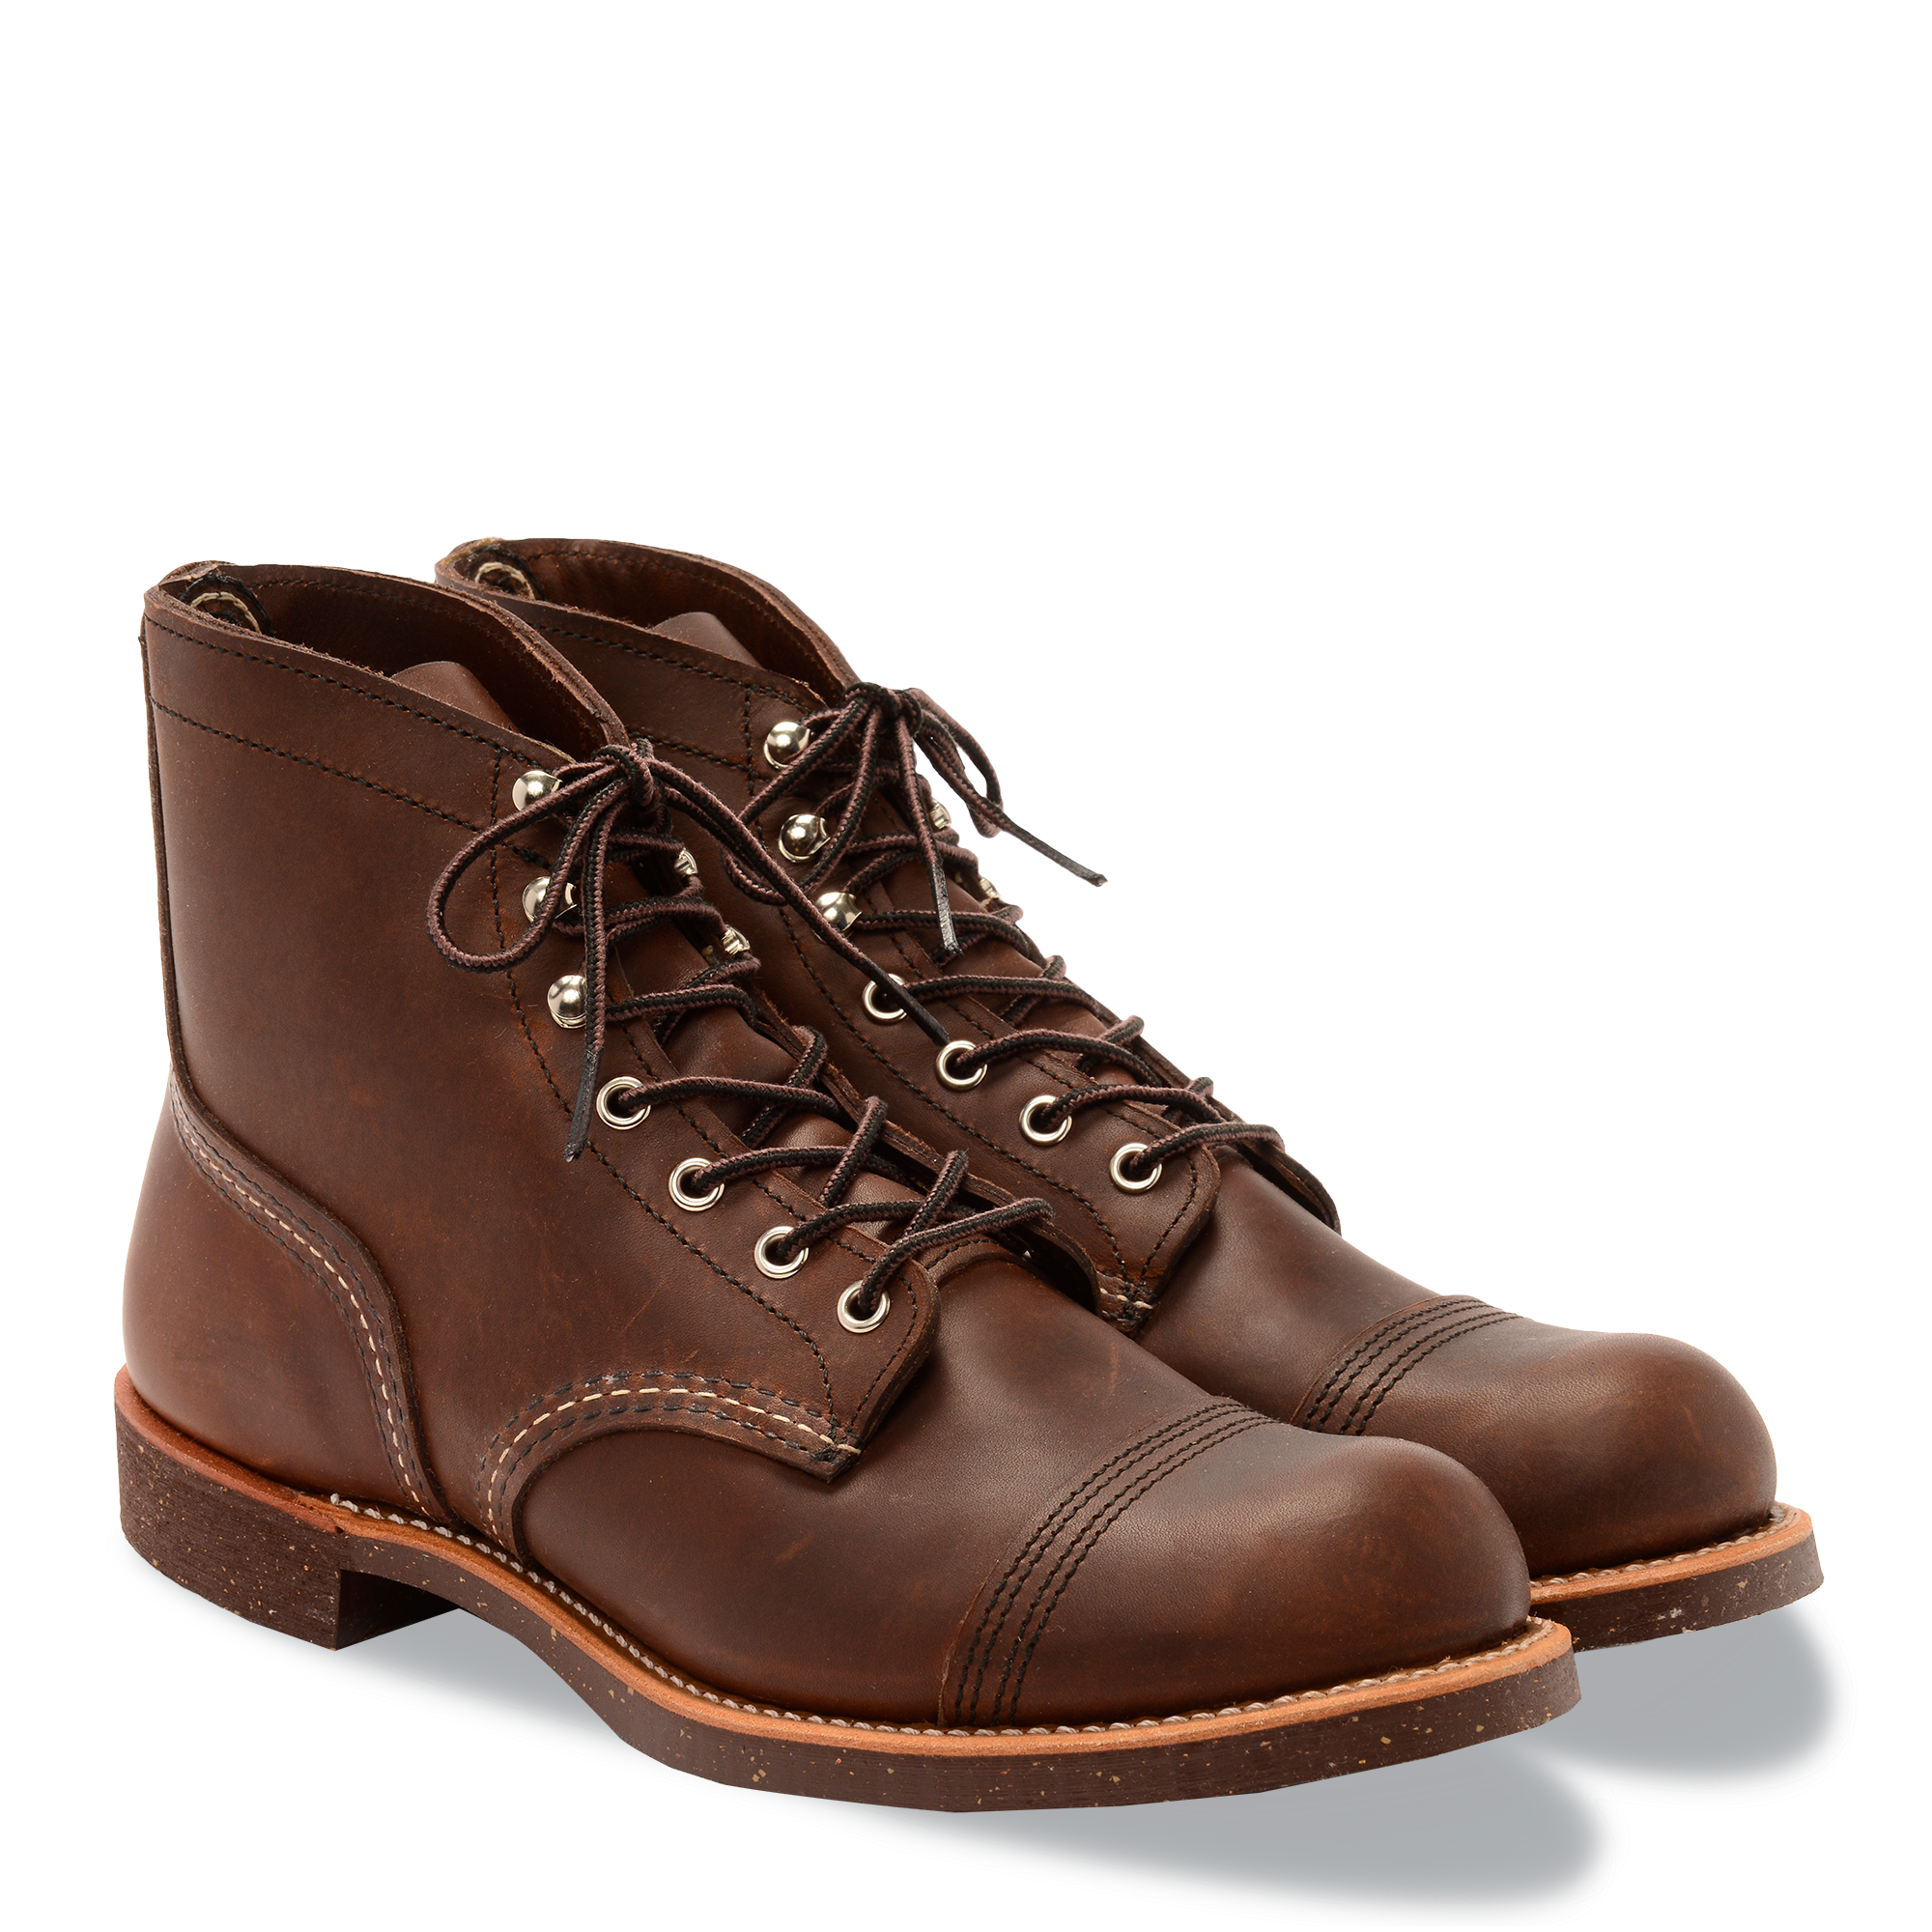 Redwing iron ranger 8111 boots